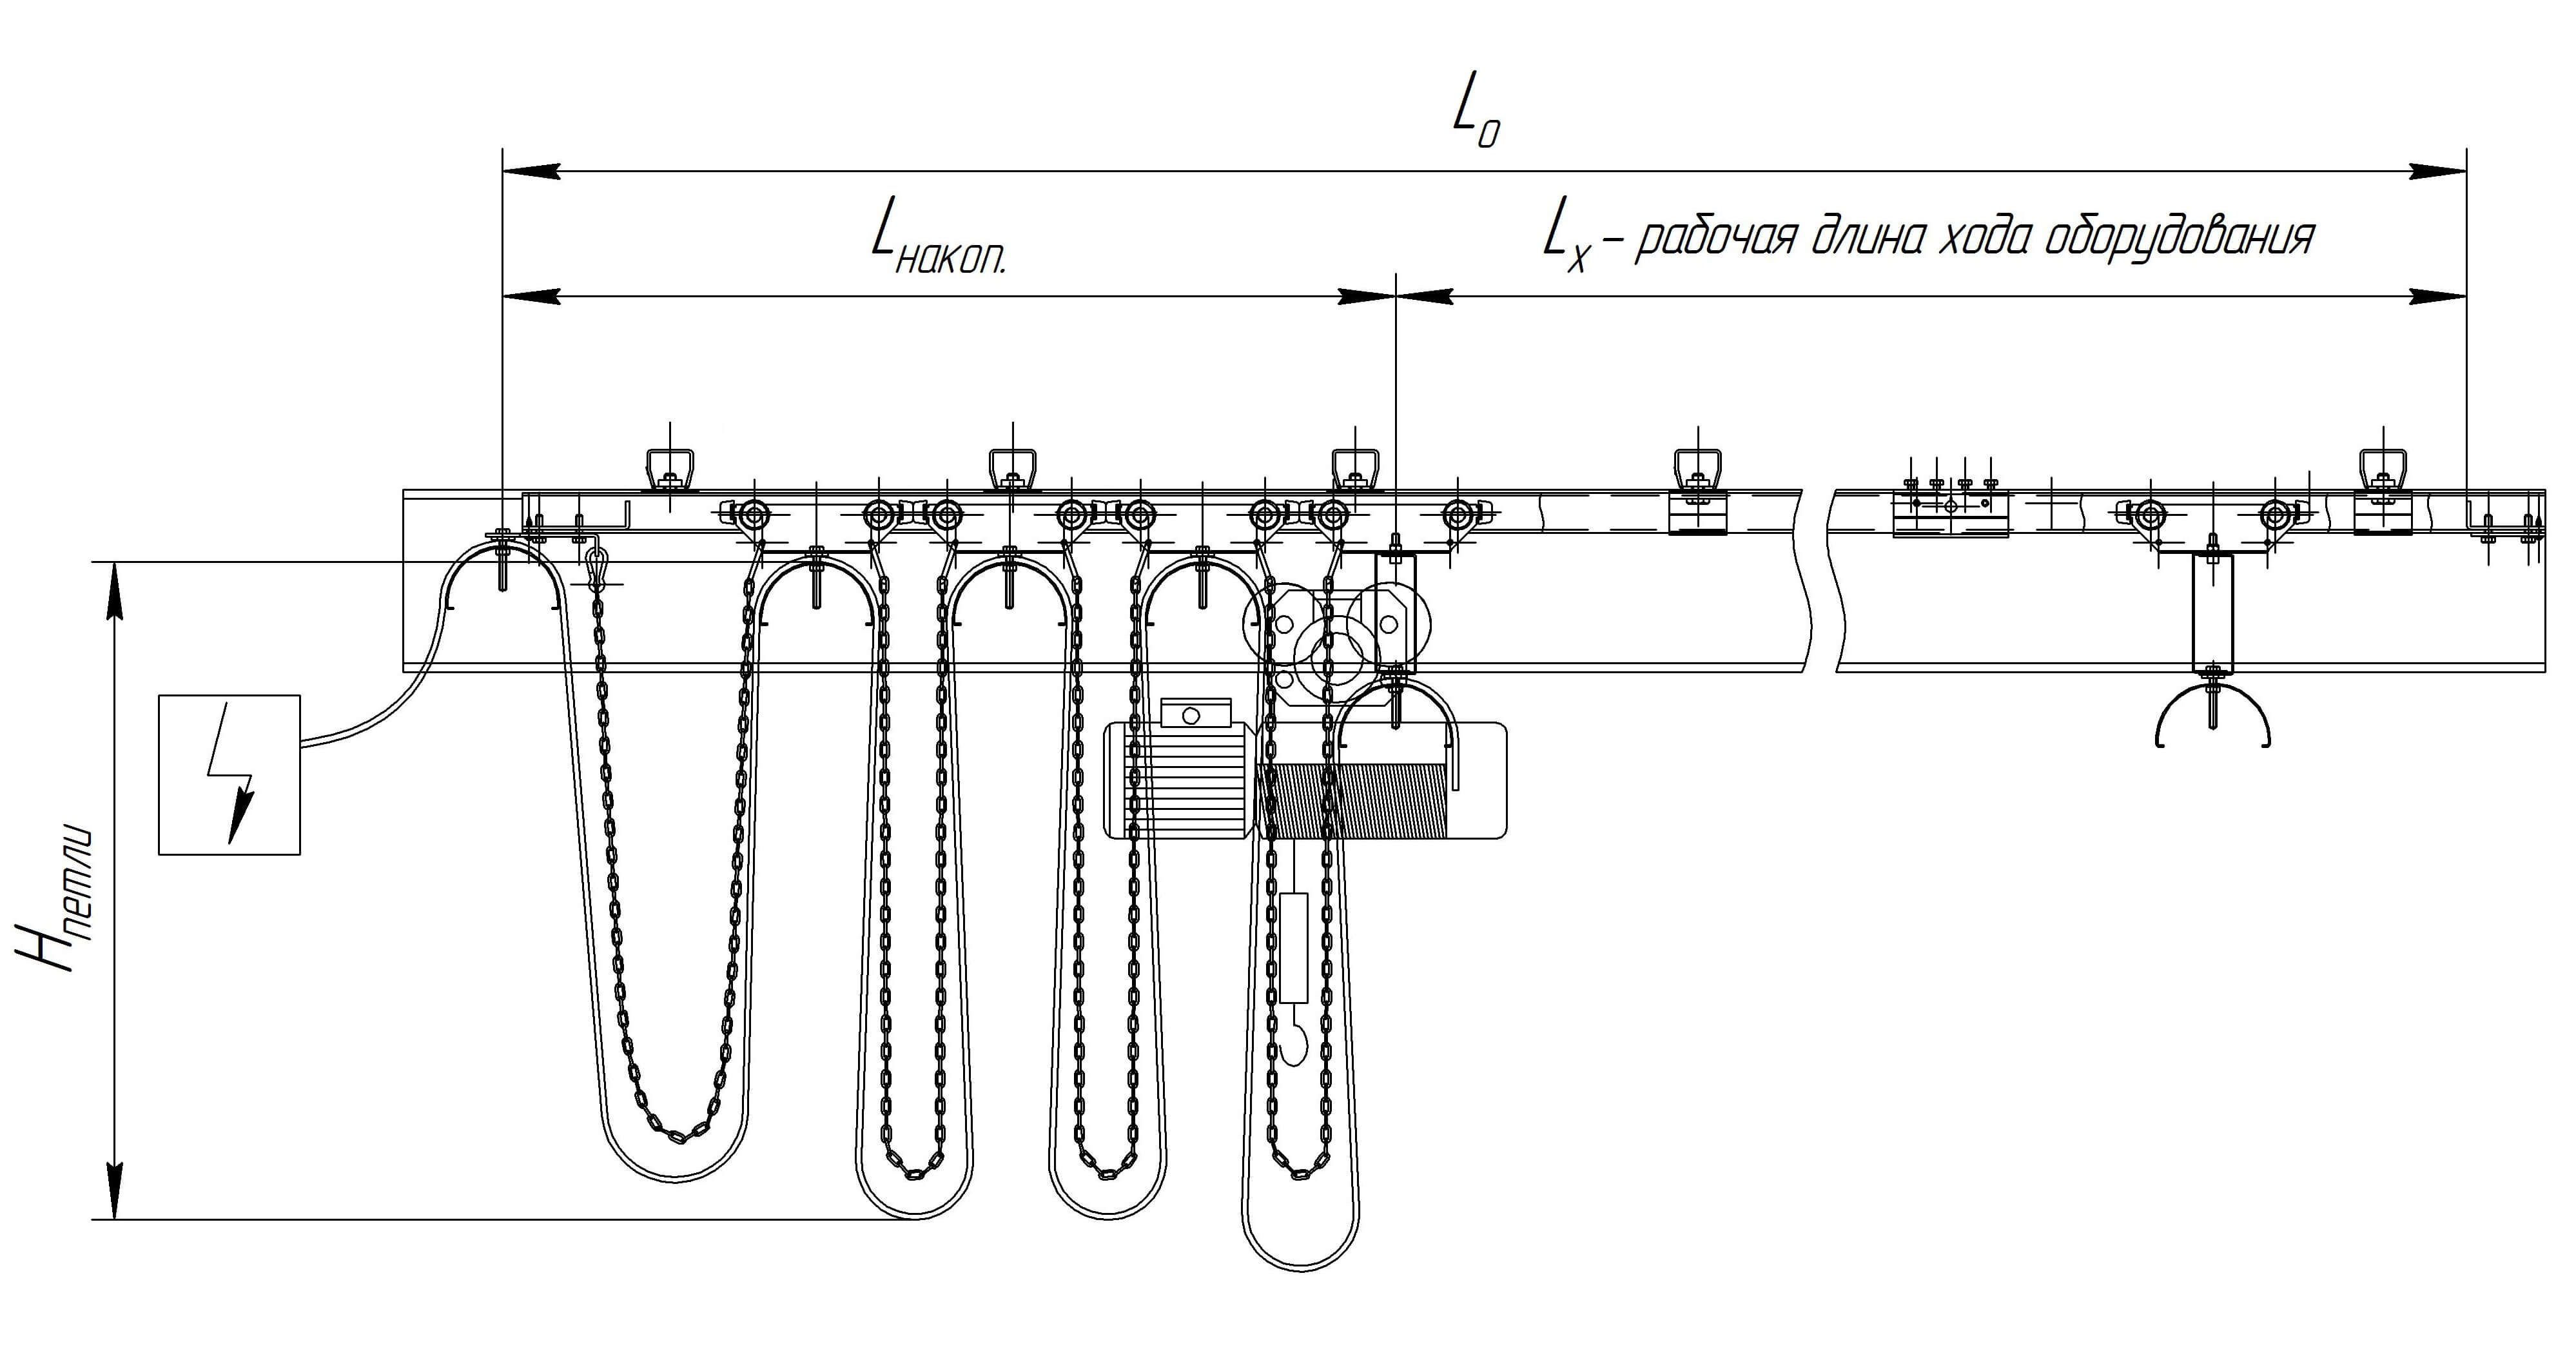  Схема кабельной системы гирляндного типа